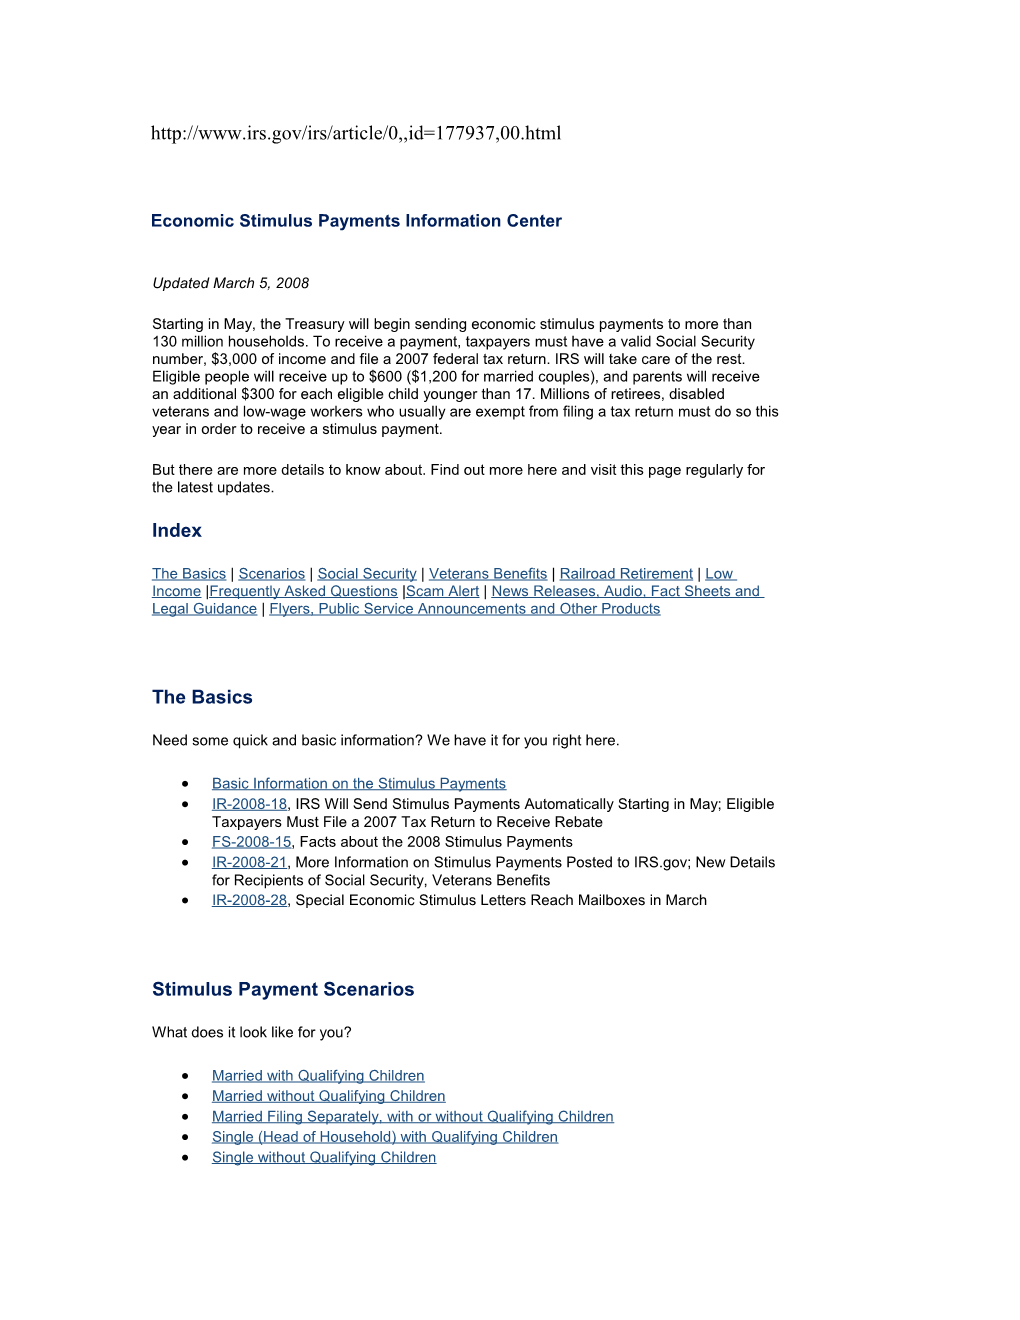 Economic Stimulus Payments Information Center